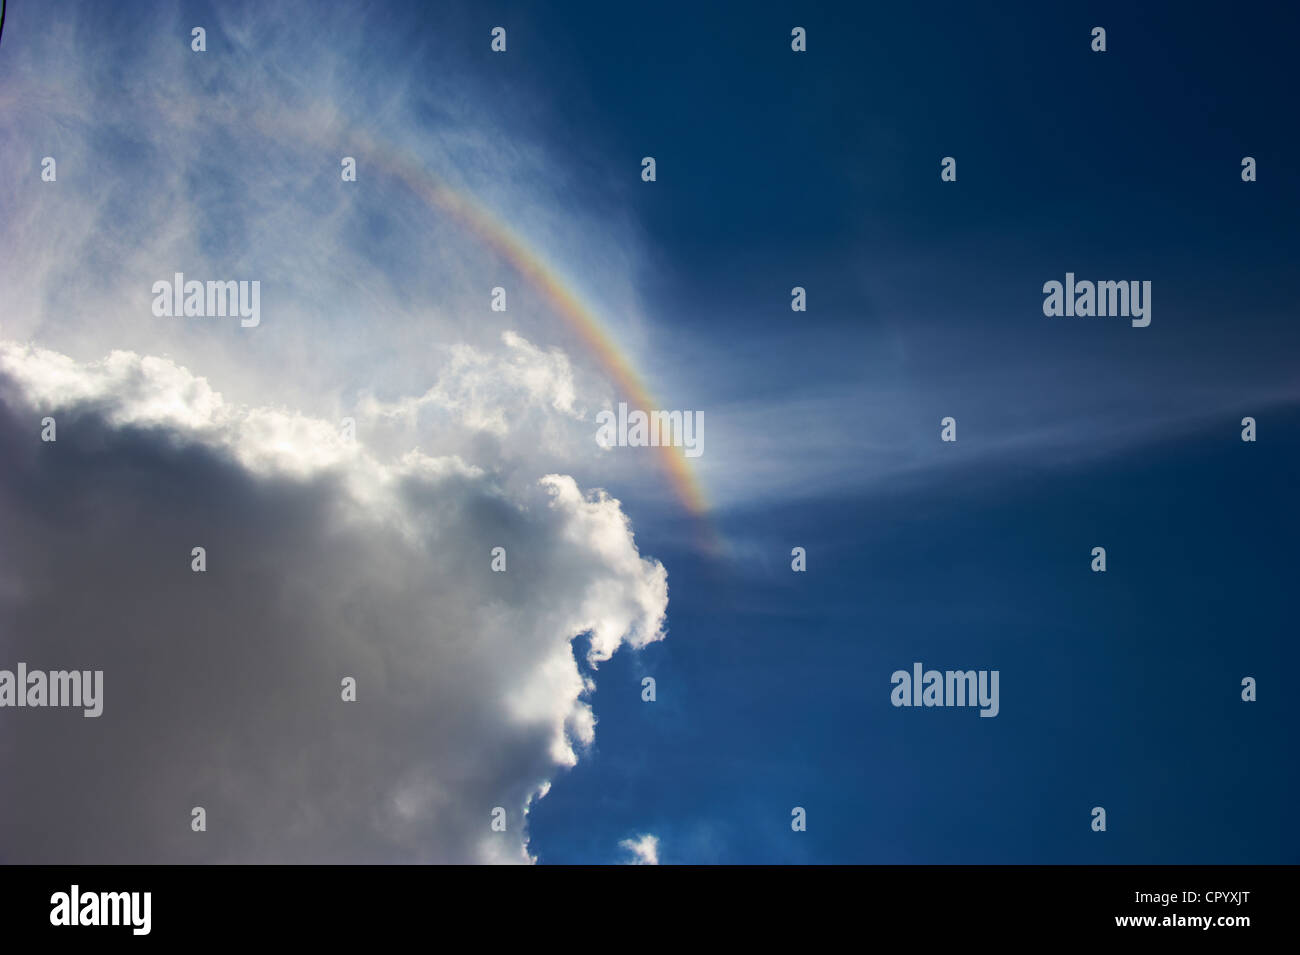 Rainbow against cloudy sky Stock Photo